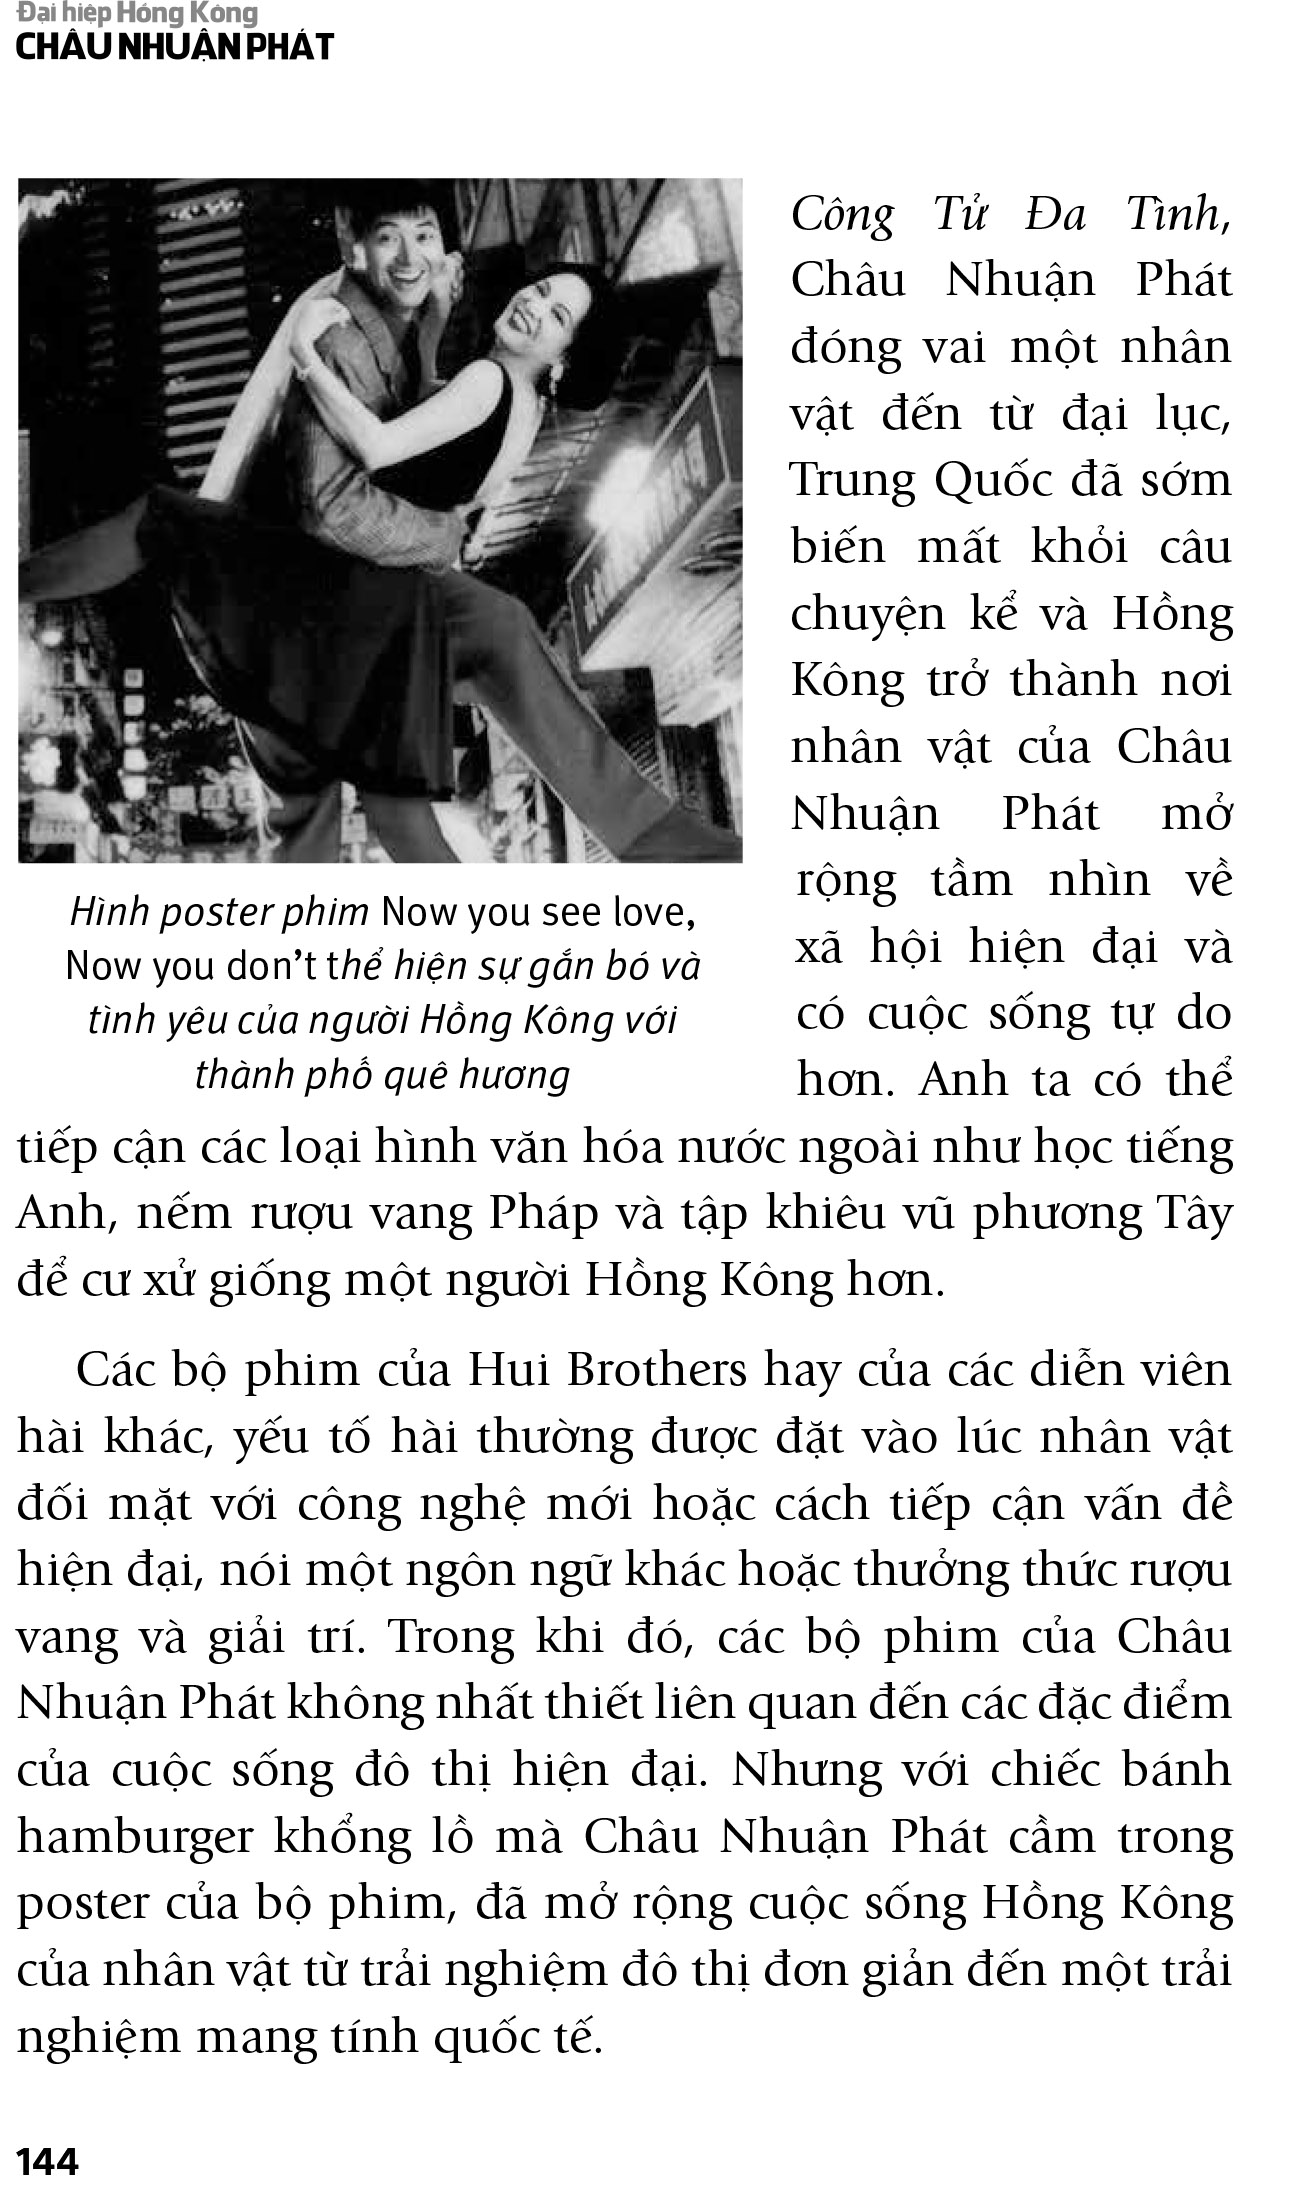 Châu Nhuận Phát - Đại Hiệp Hồng Kông PDF